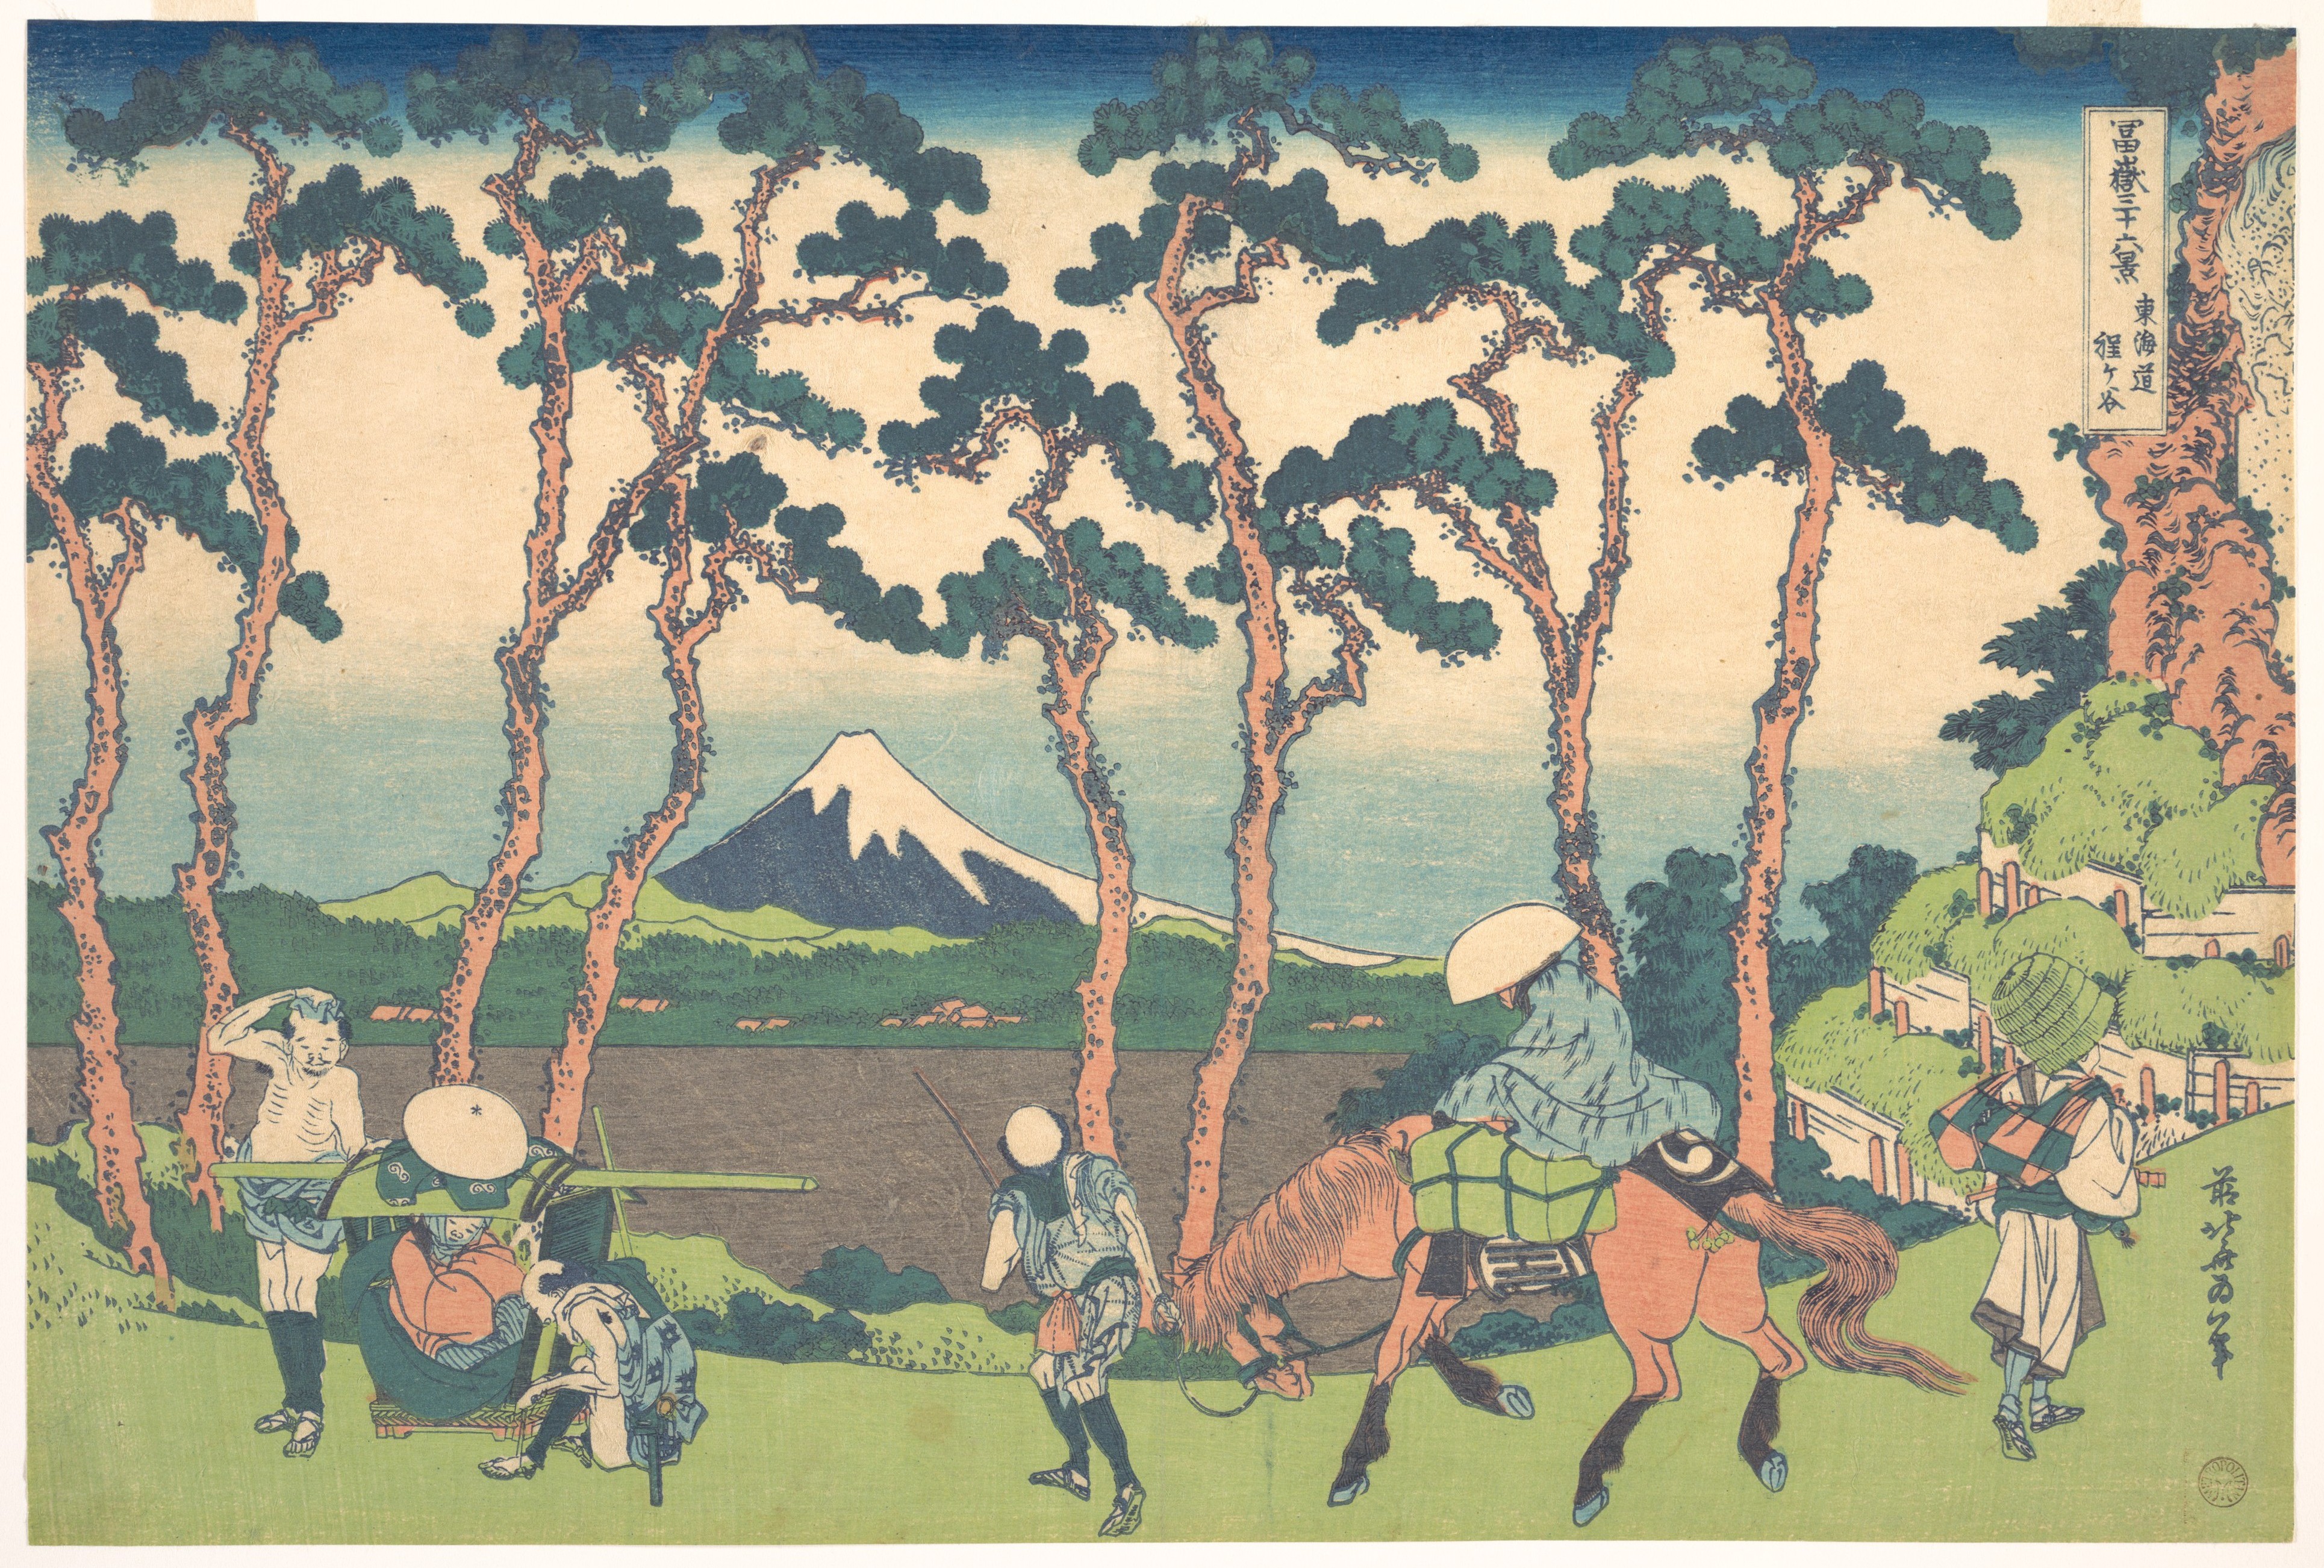 Hodogaya on the Tōkaidō, from the series Thirty-six Views of Mount Fuji